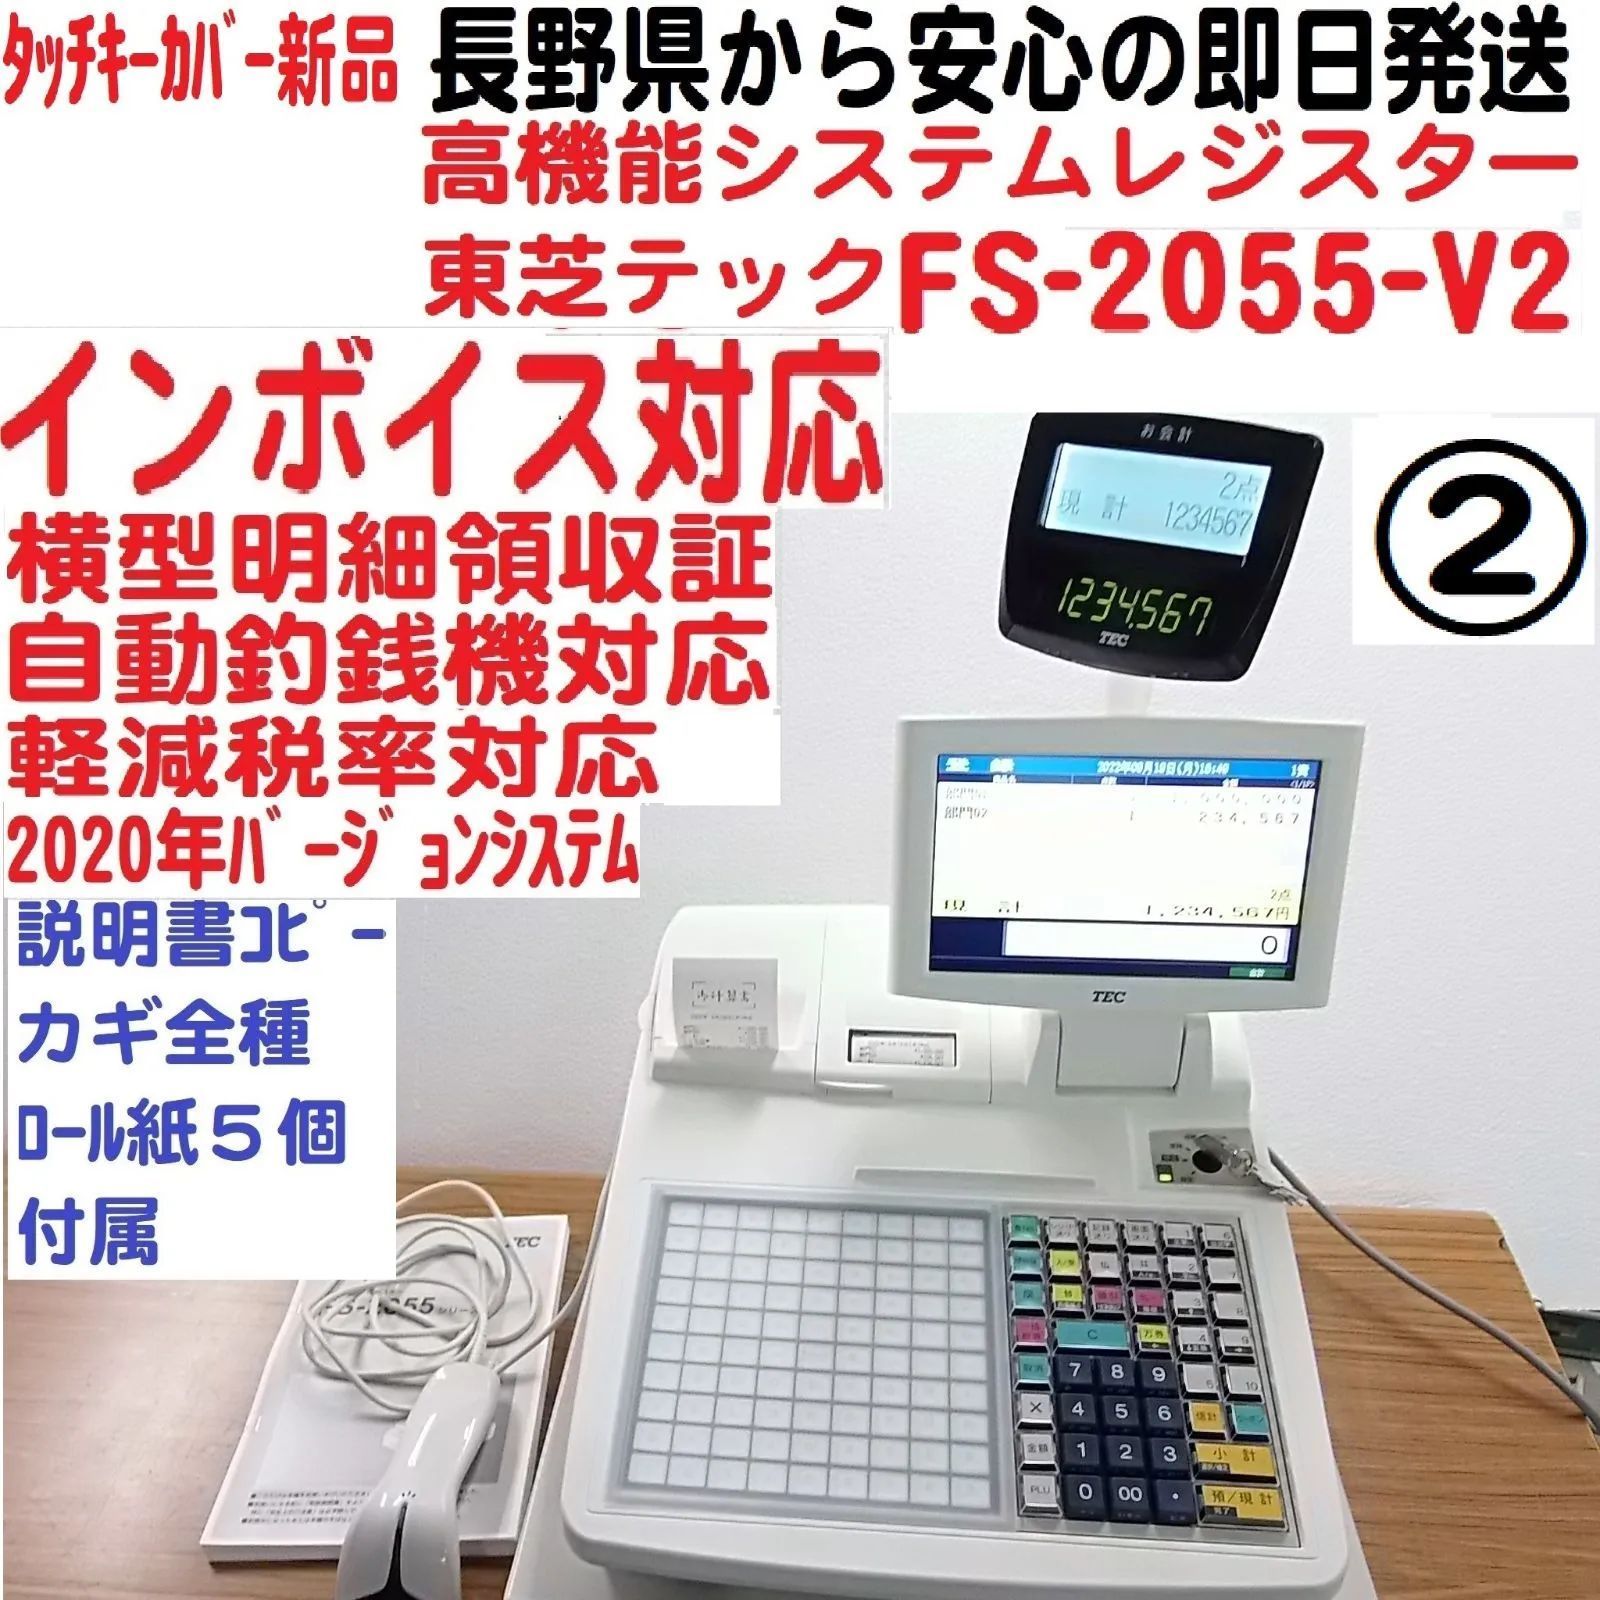 東芝テックレジスターFS-2055 -V2 スキャナ付インボイス対応 - メルカリ